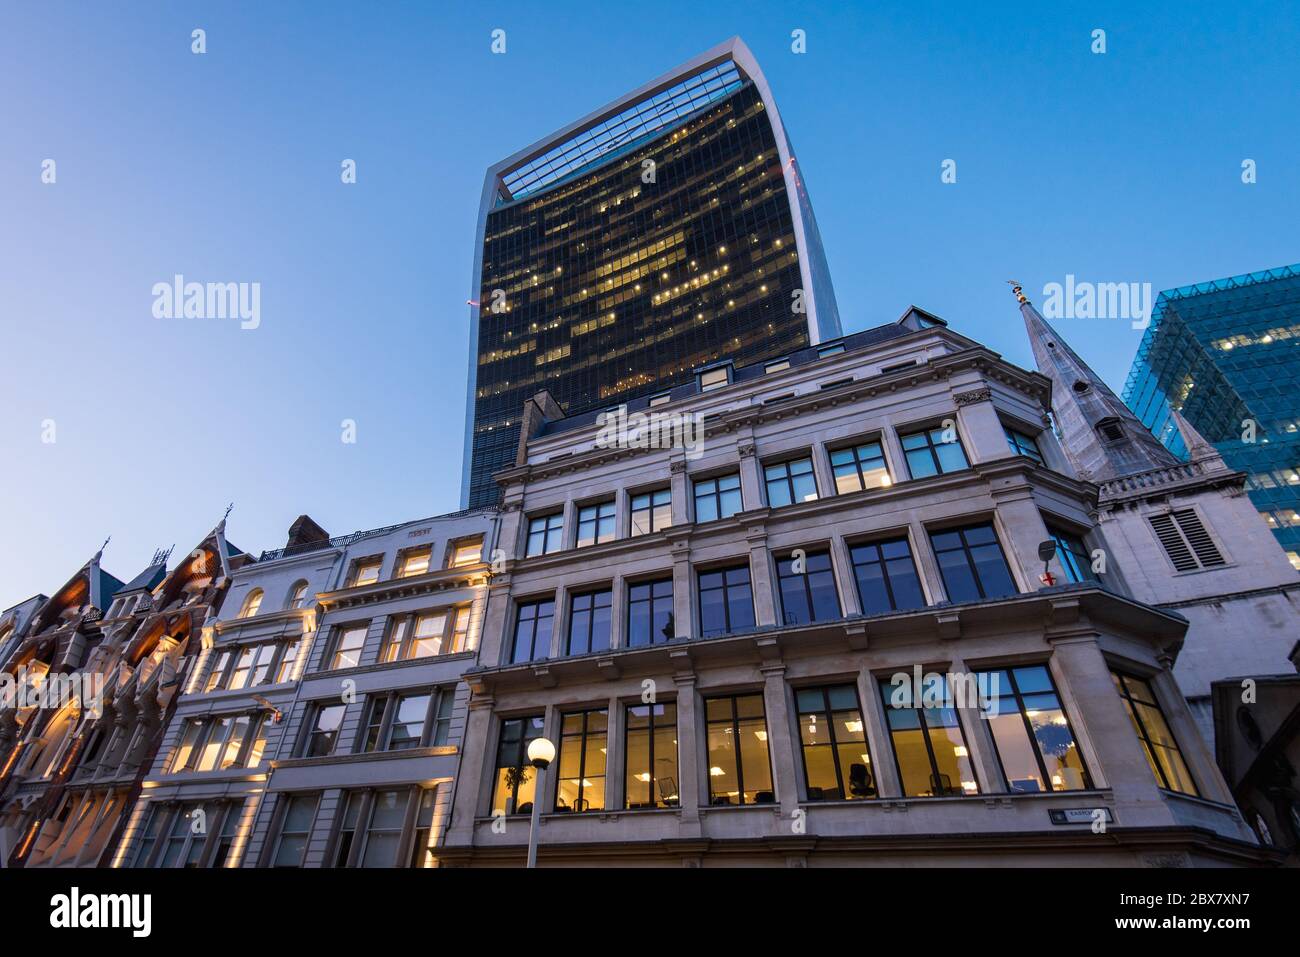 L'edificio Walkie Talkie sorge sopra gli edifici britannici di vecchia architettura a Londra, Regno Unito Foto Stock